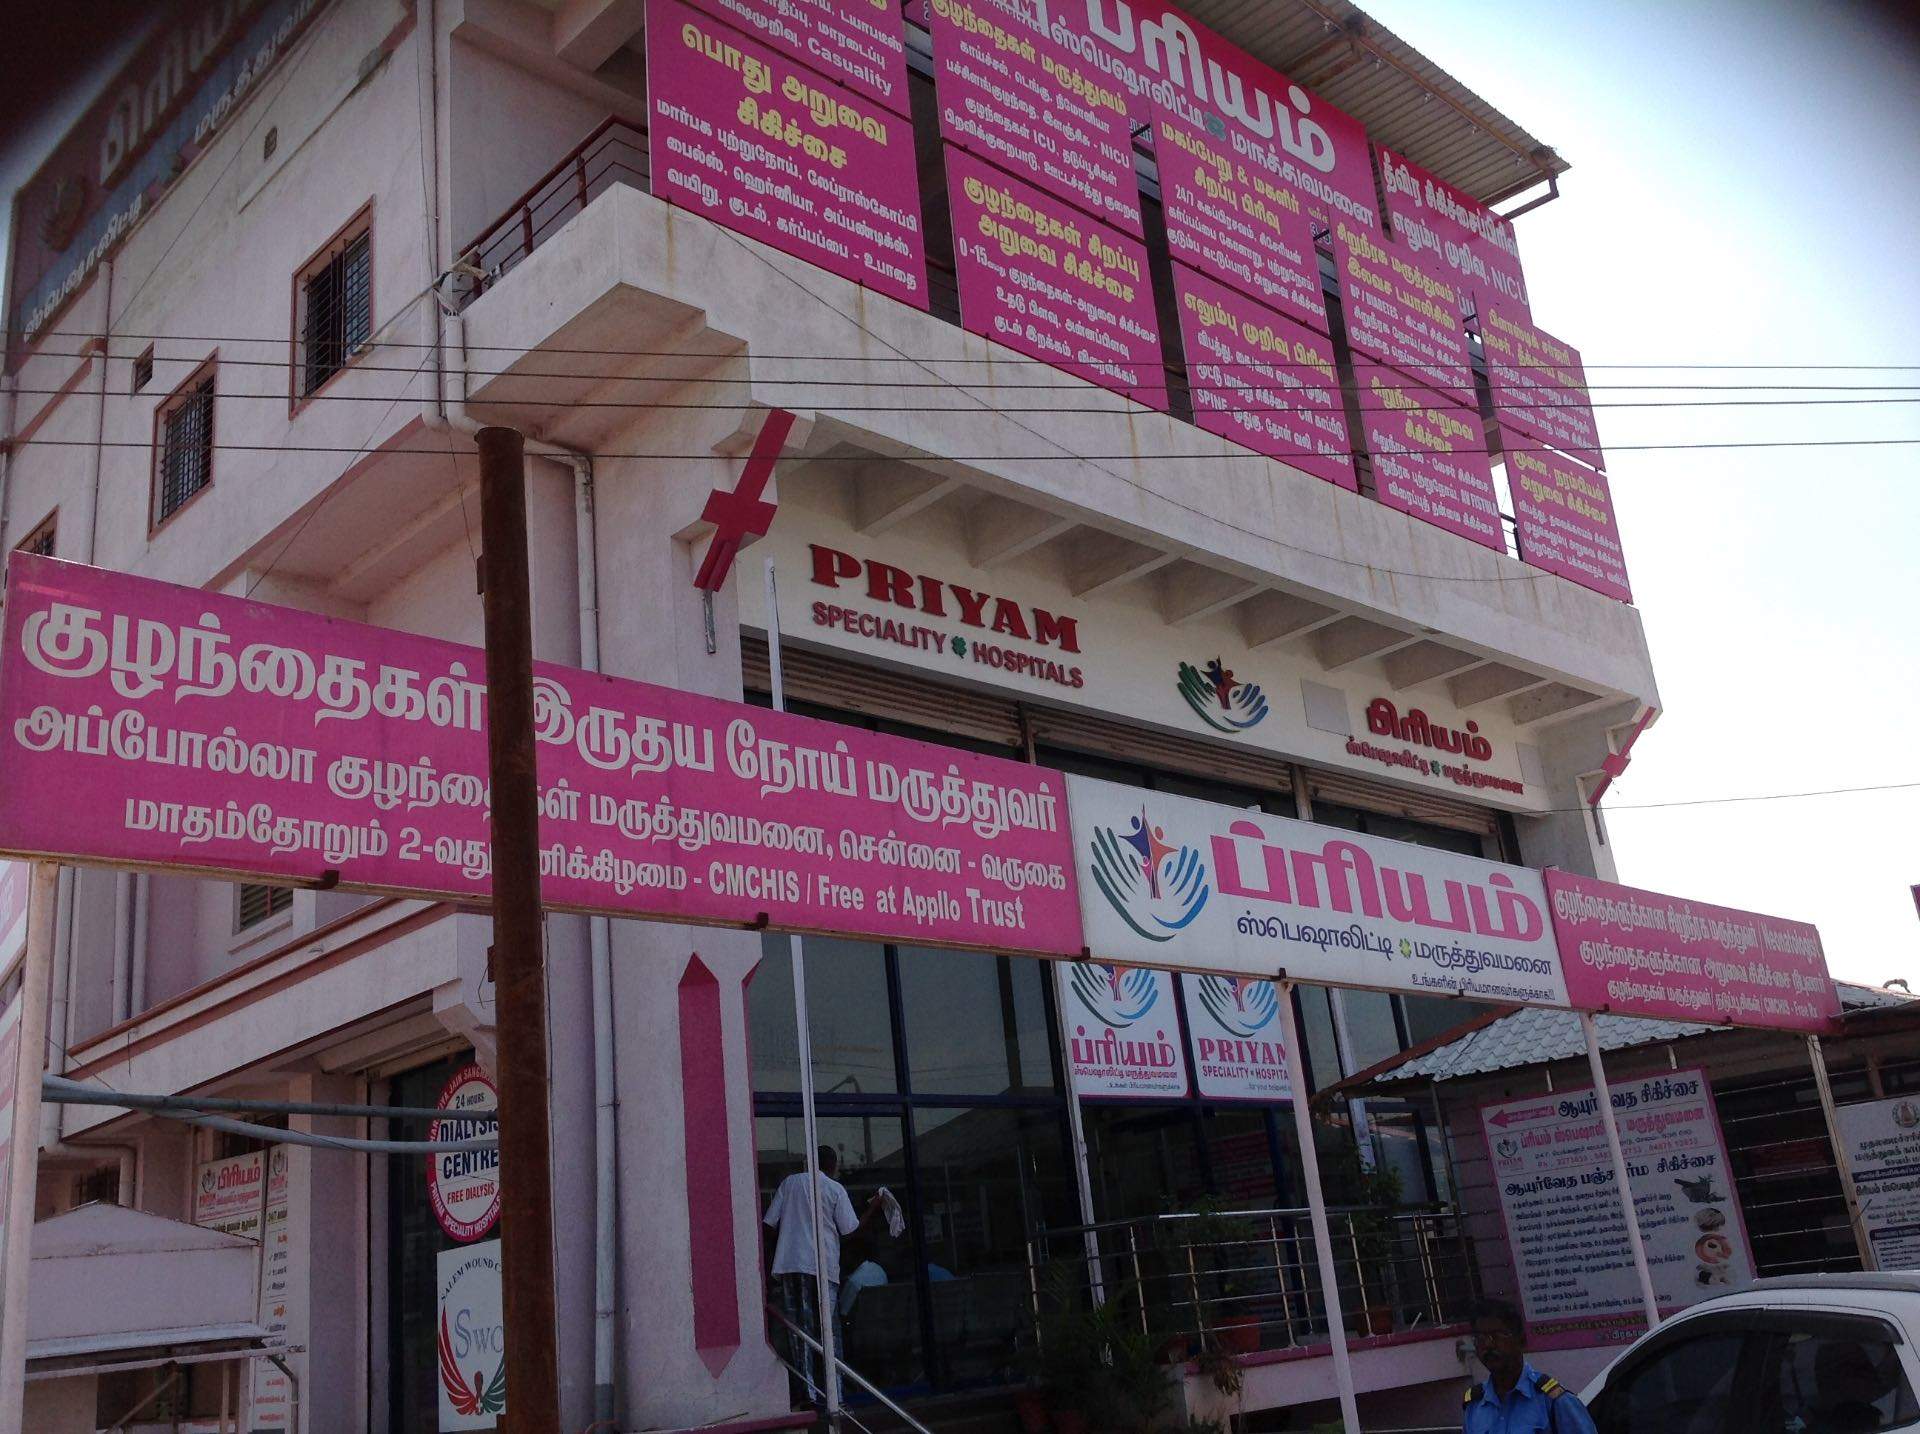 Priyam Specialty Hospital, Salem district